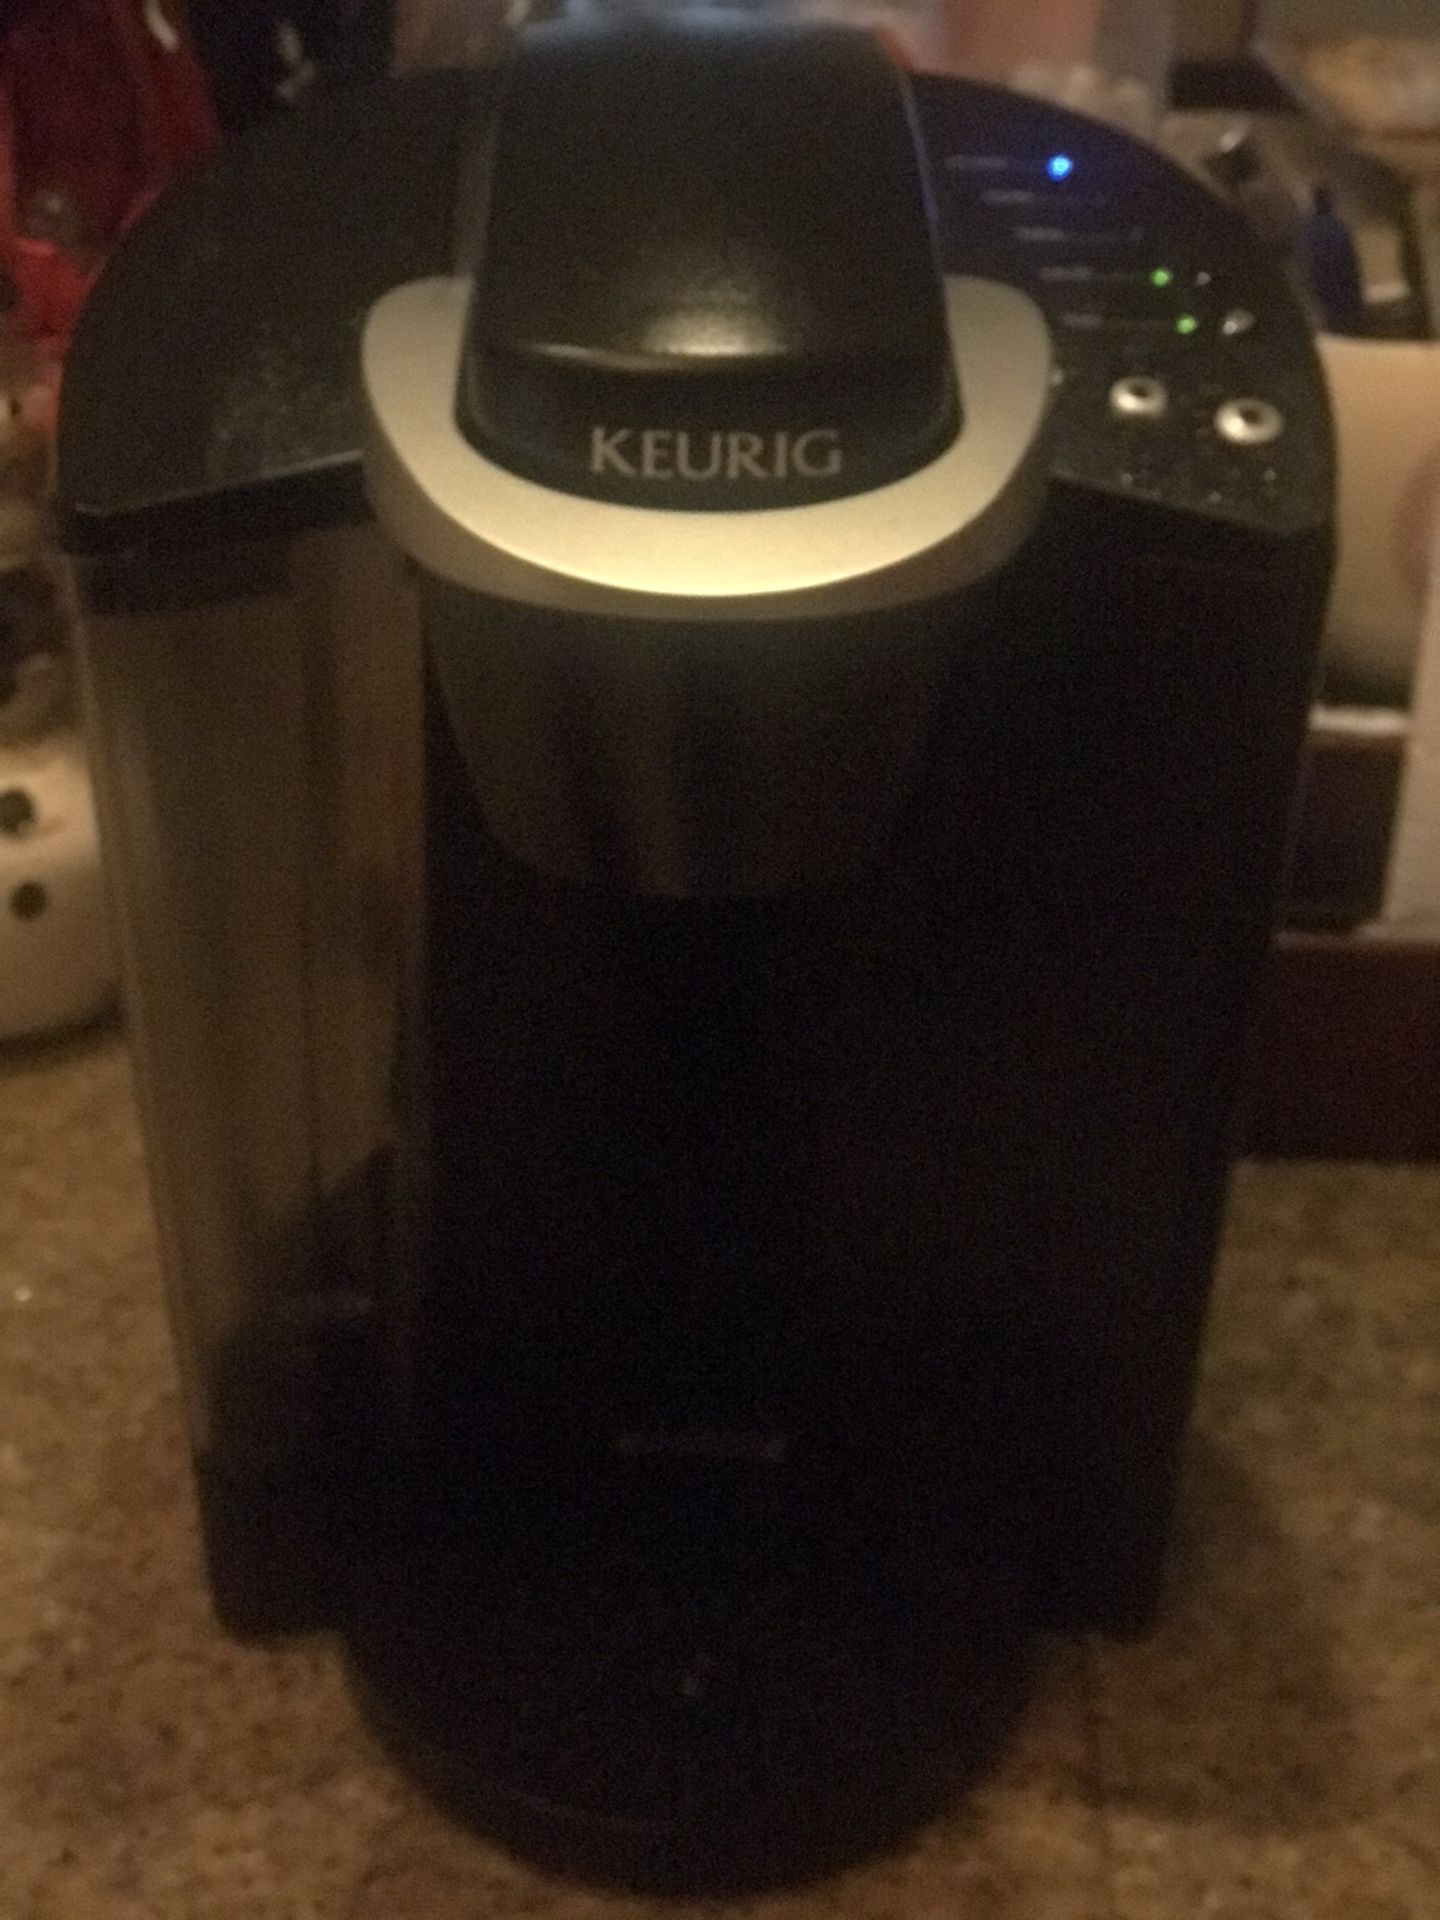 Keurig Coffee Machine Model K40 - Working Great